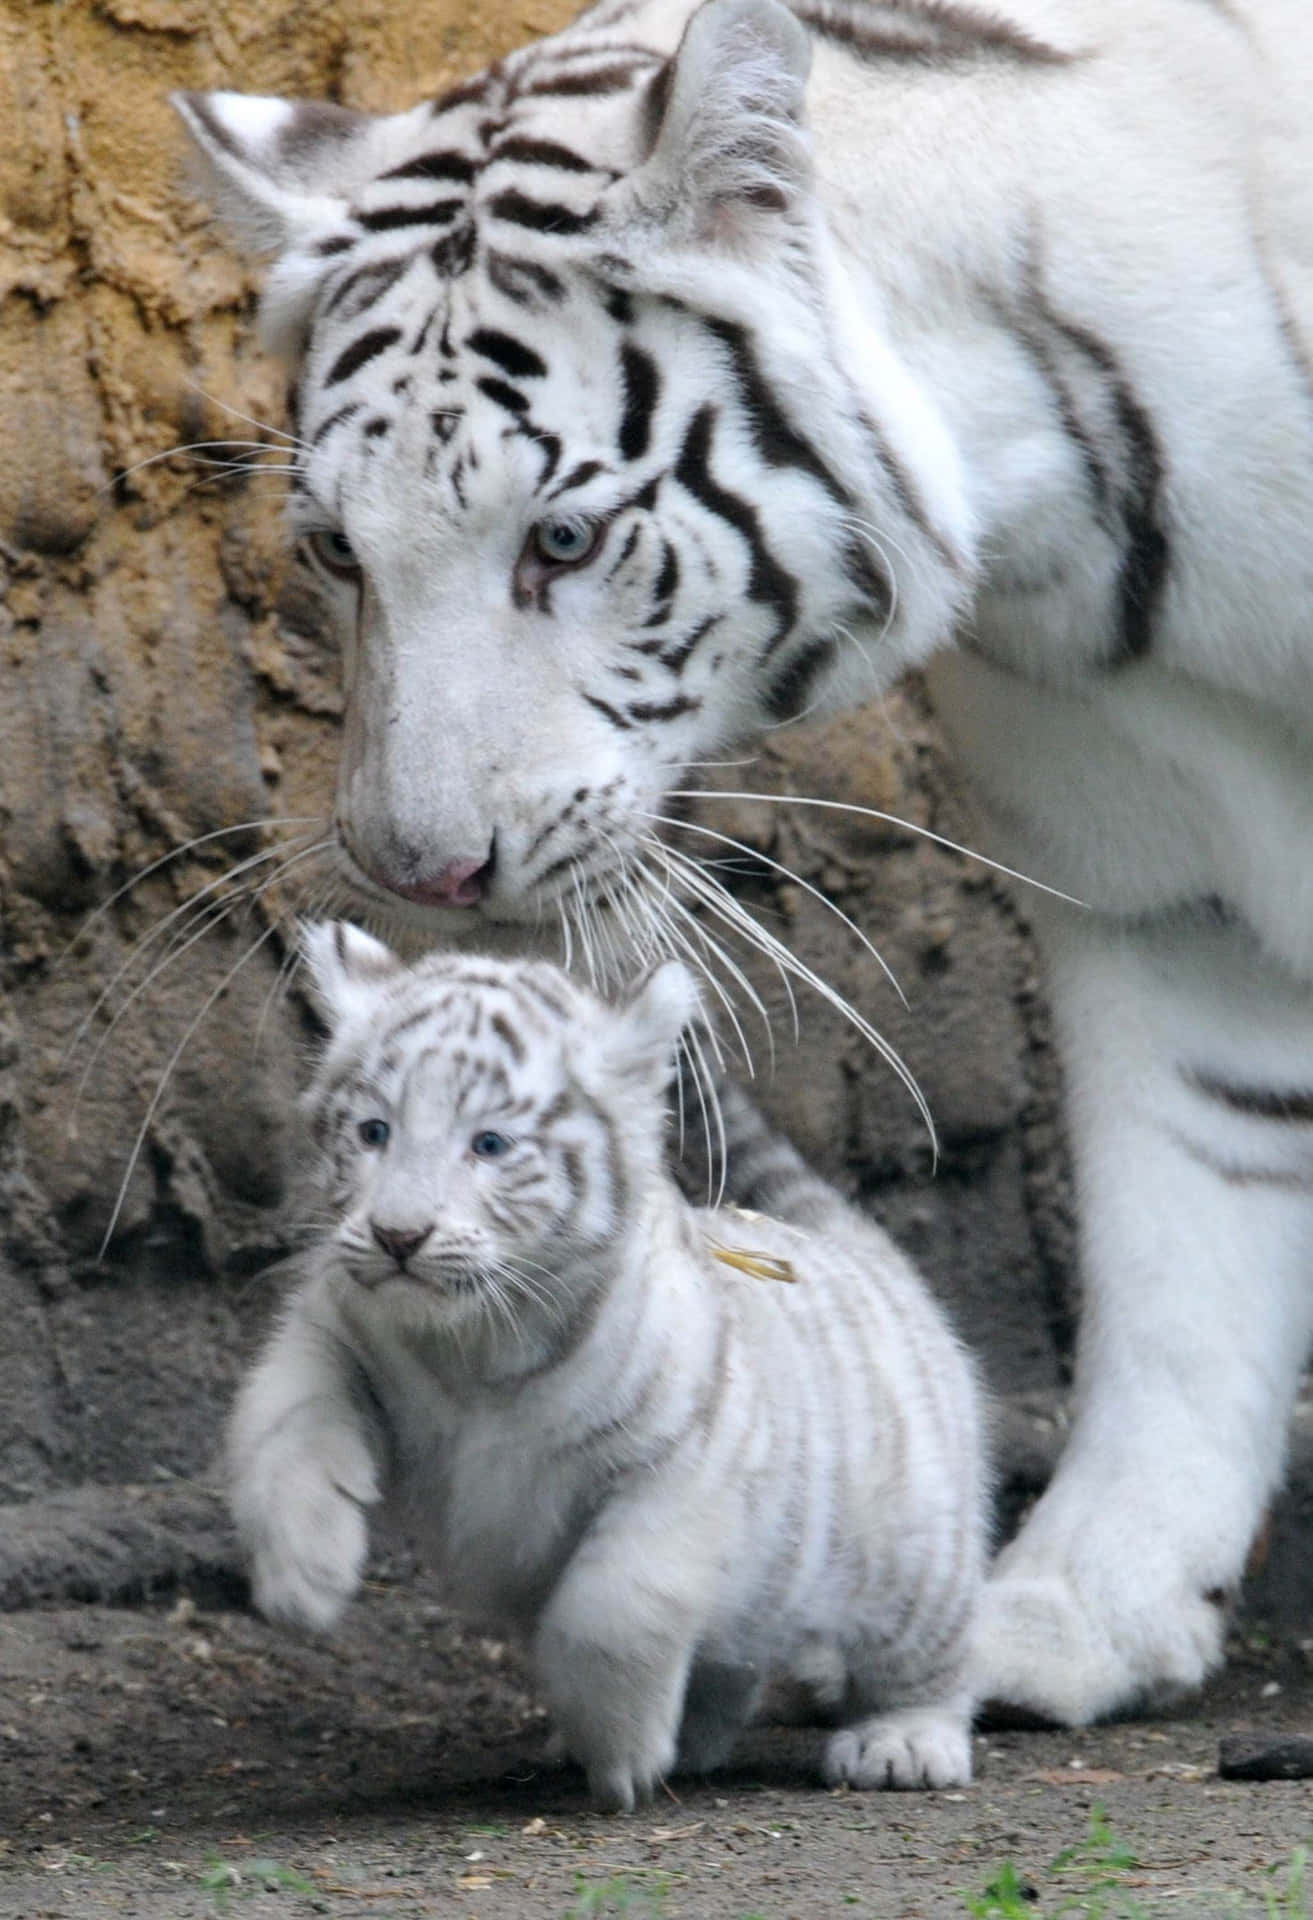 Hintergrundbildmit Baby-tiger